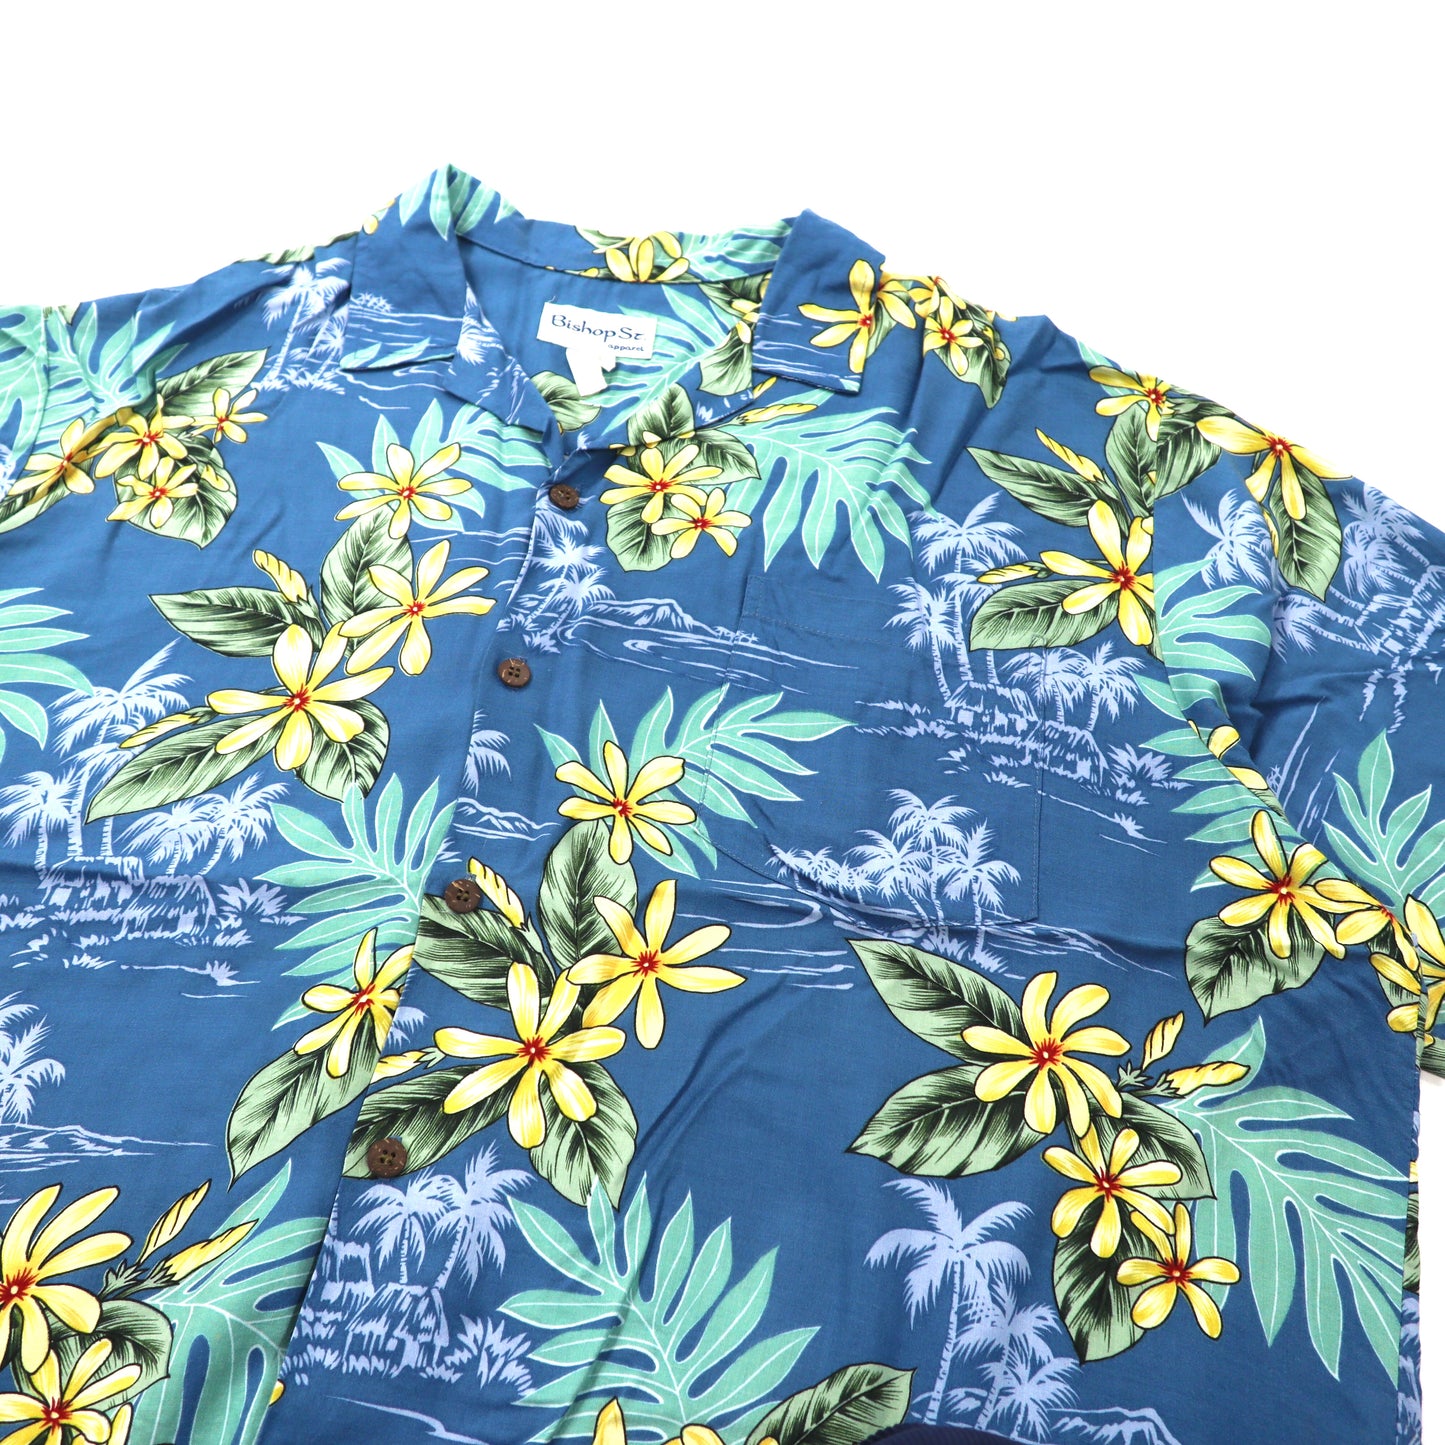 Bishop St. apparel アロハシャツ XL ネイビー ボタニカル柄 ビッグサイズ ハワイ製